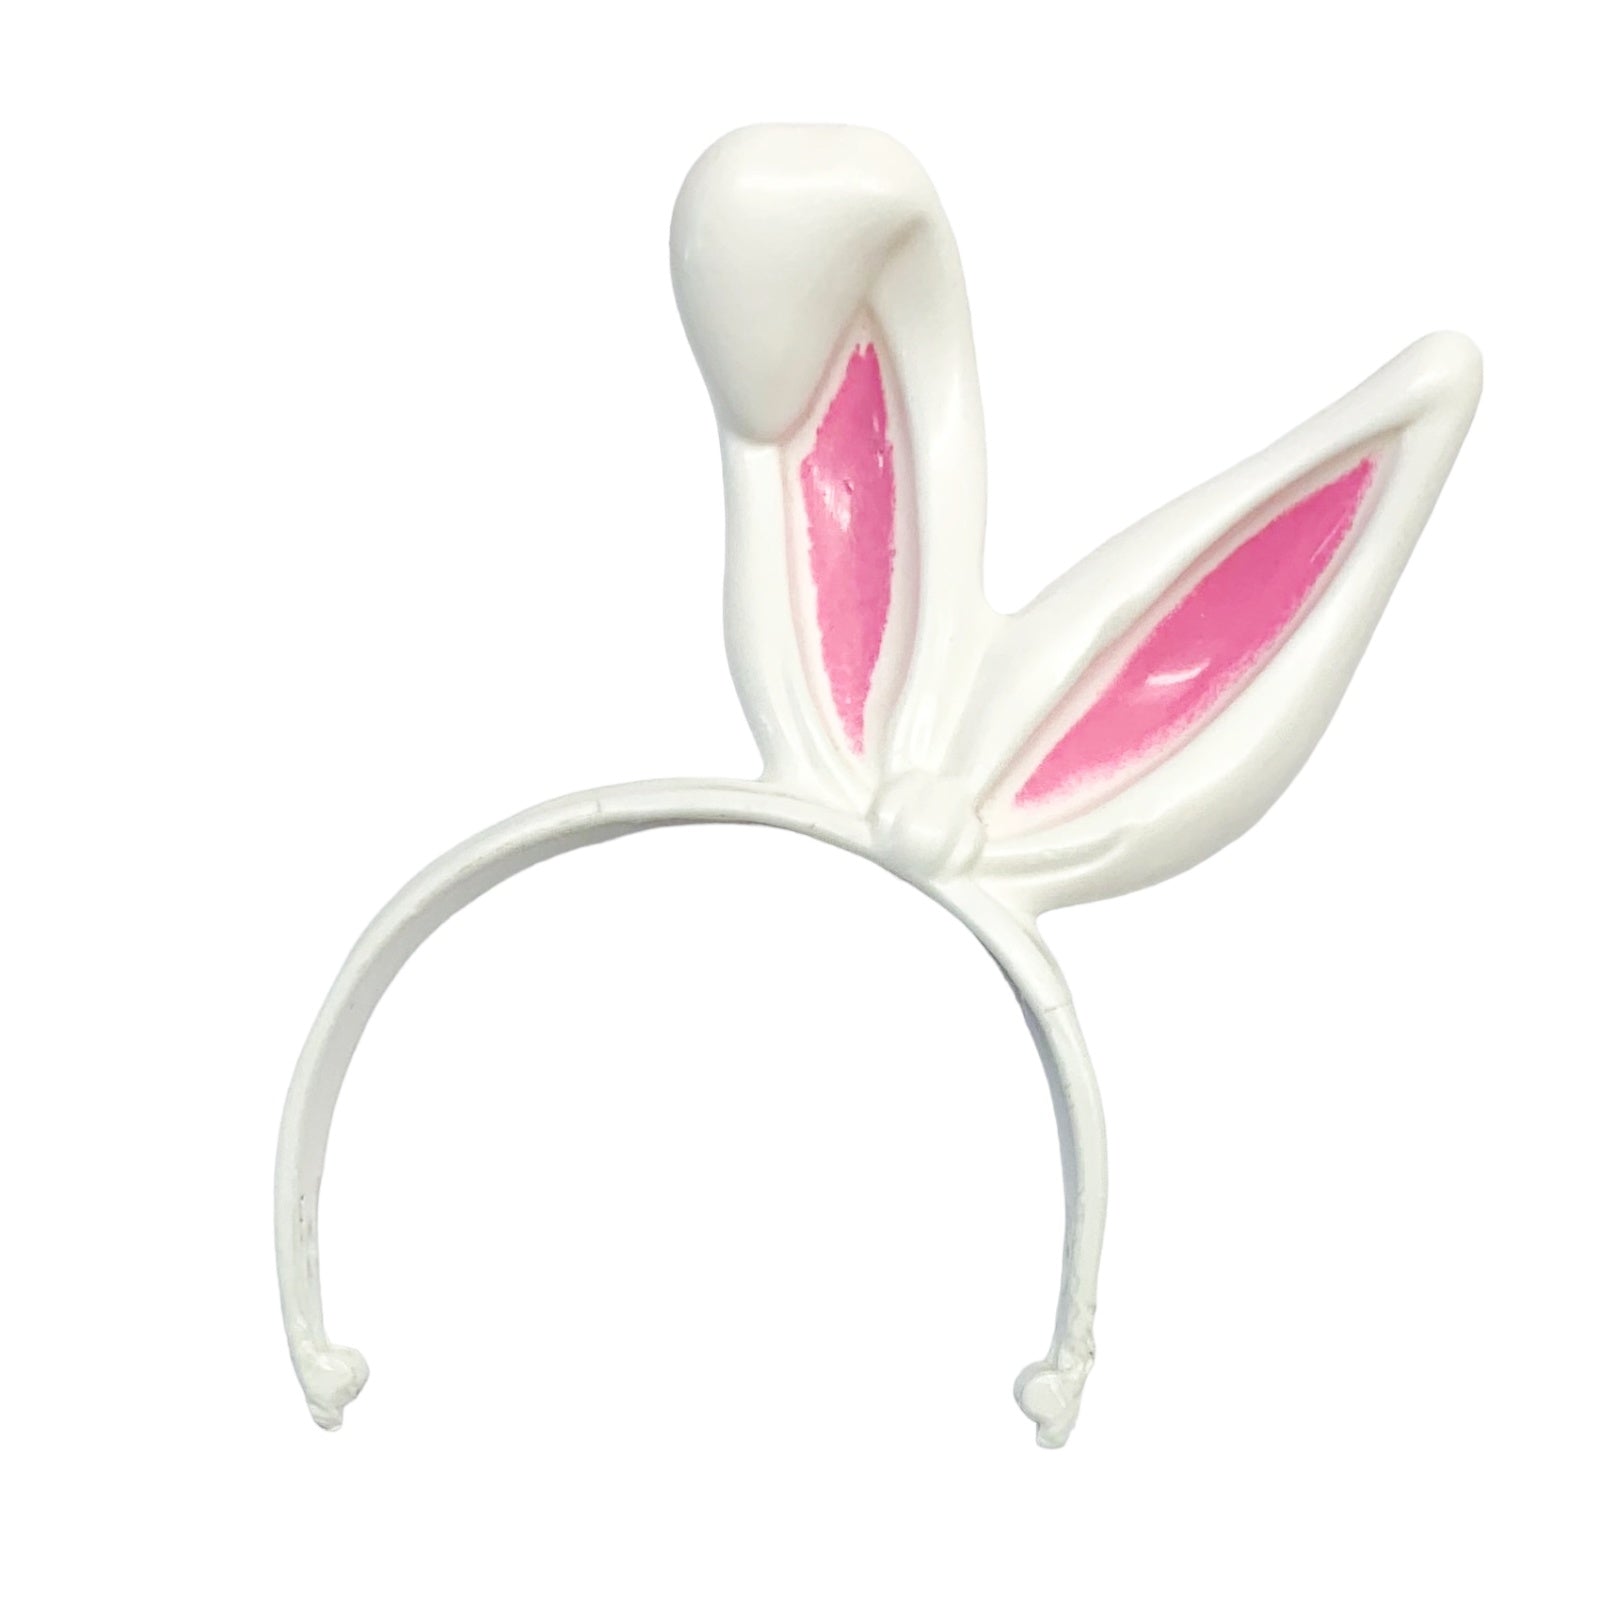 Headband Bunny Ears